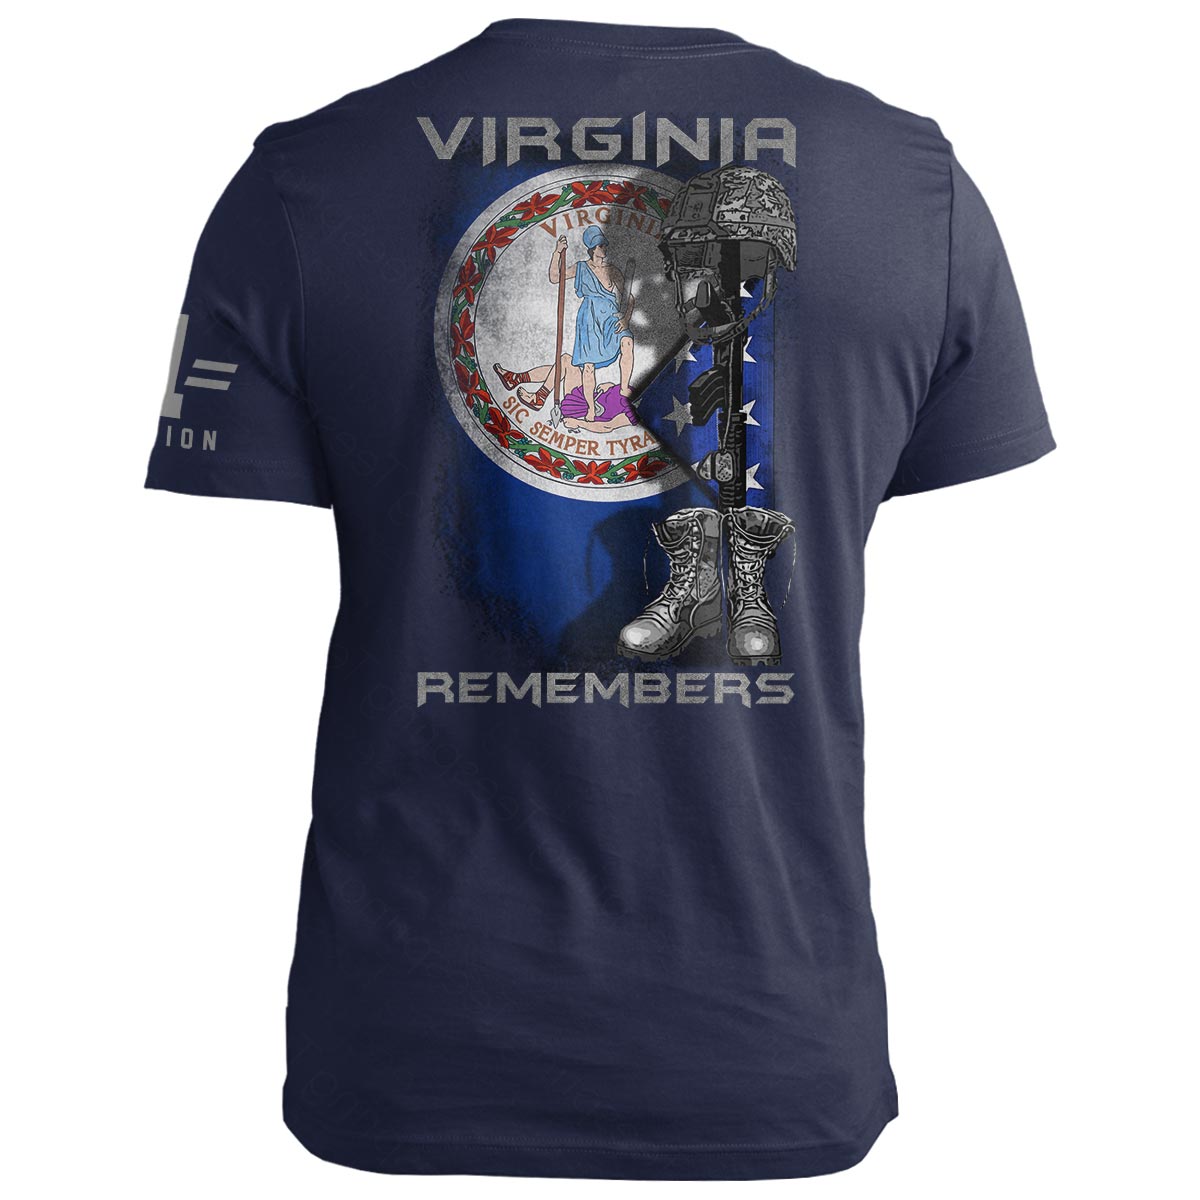 Virginia Remembers